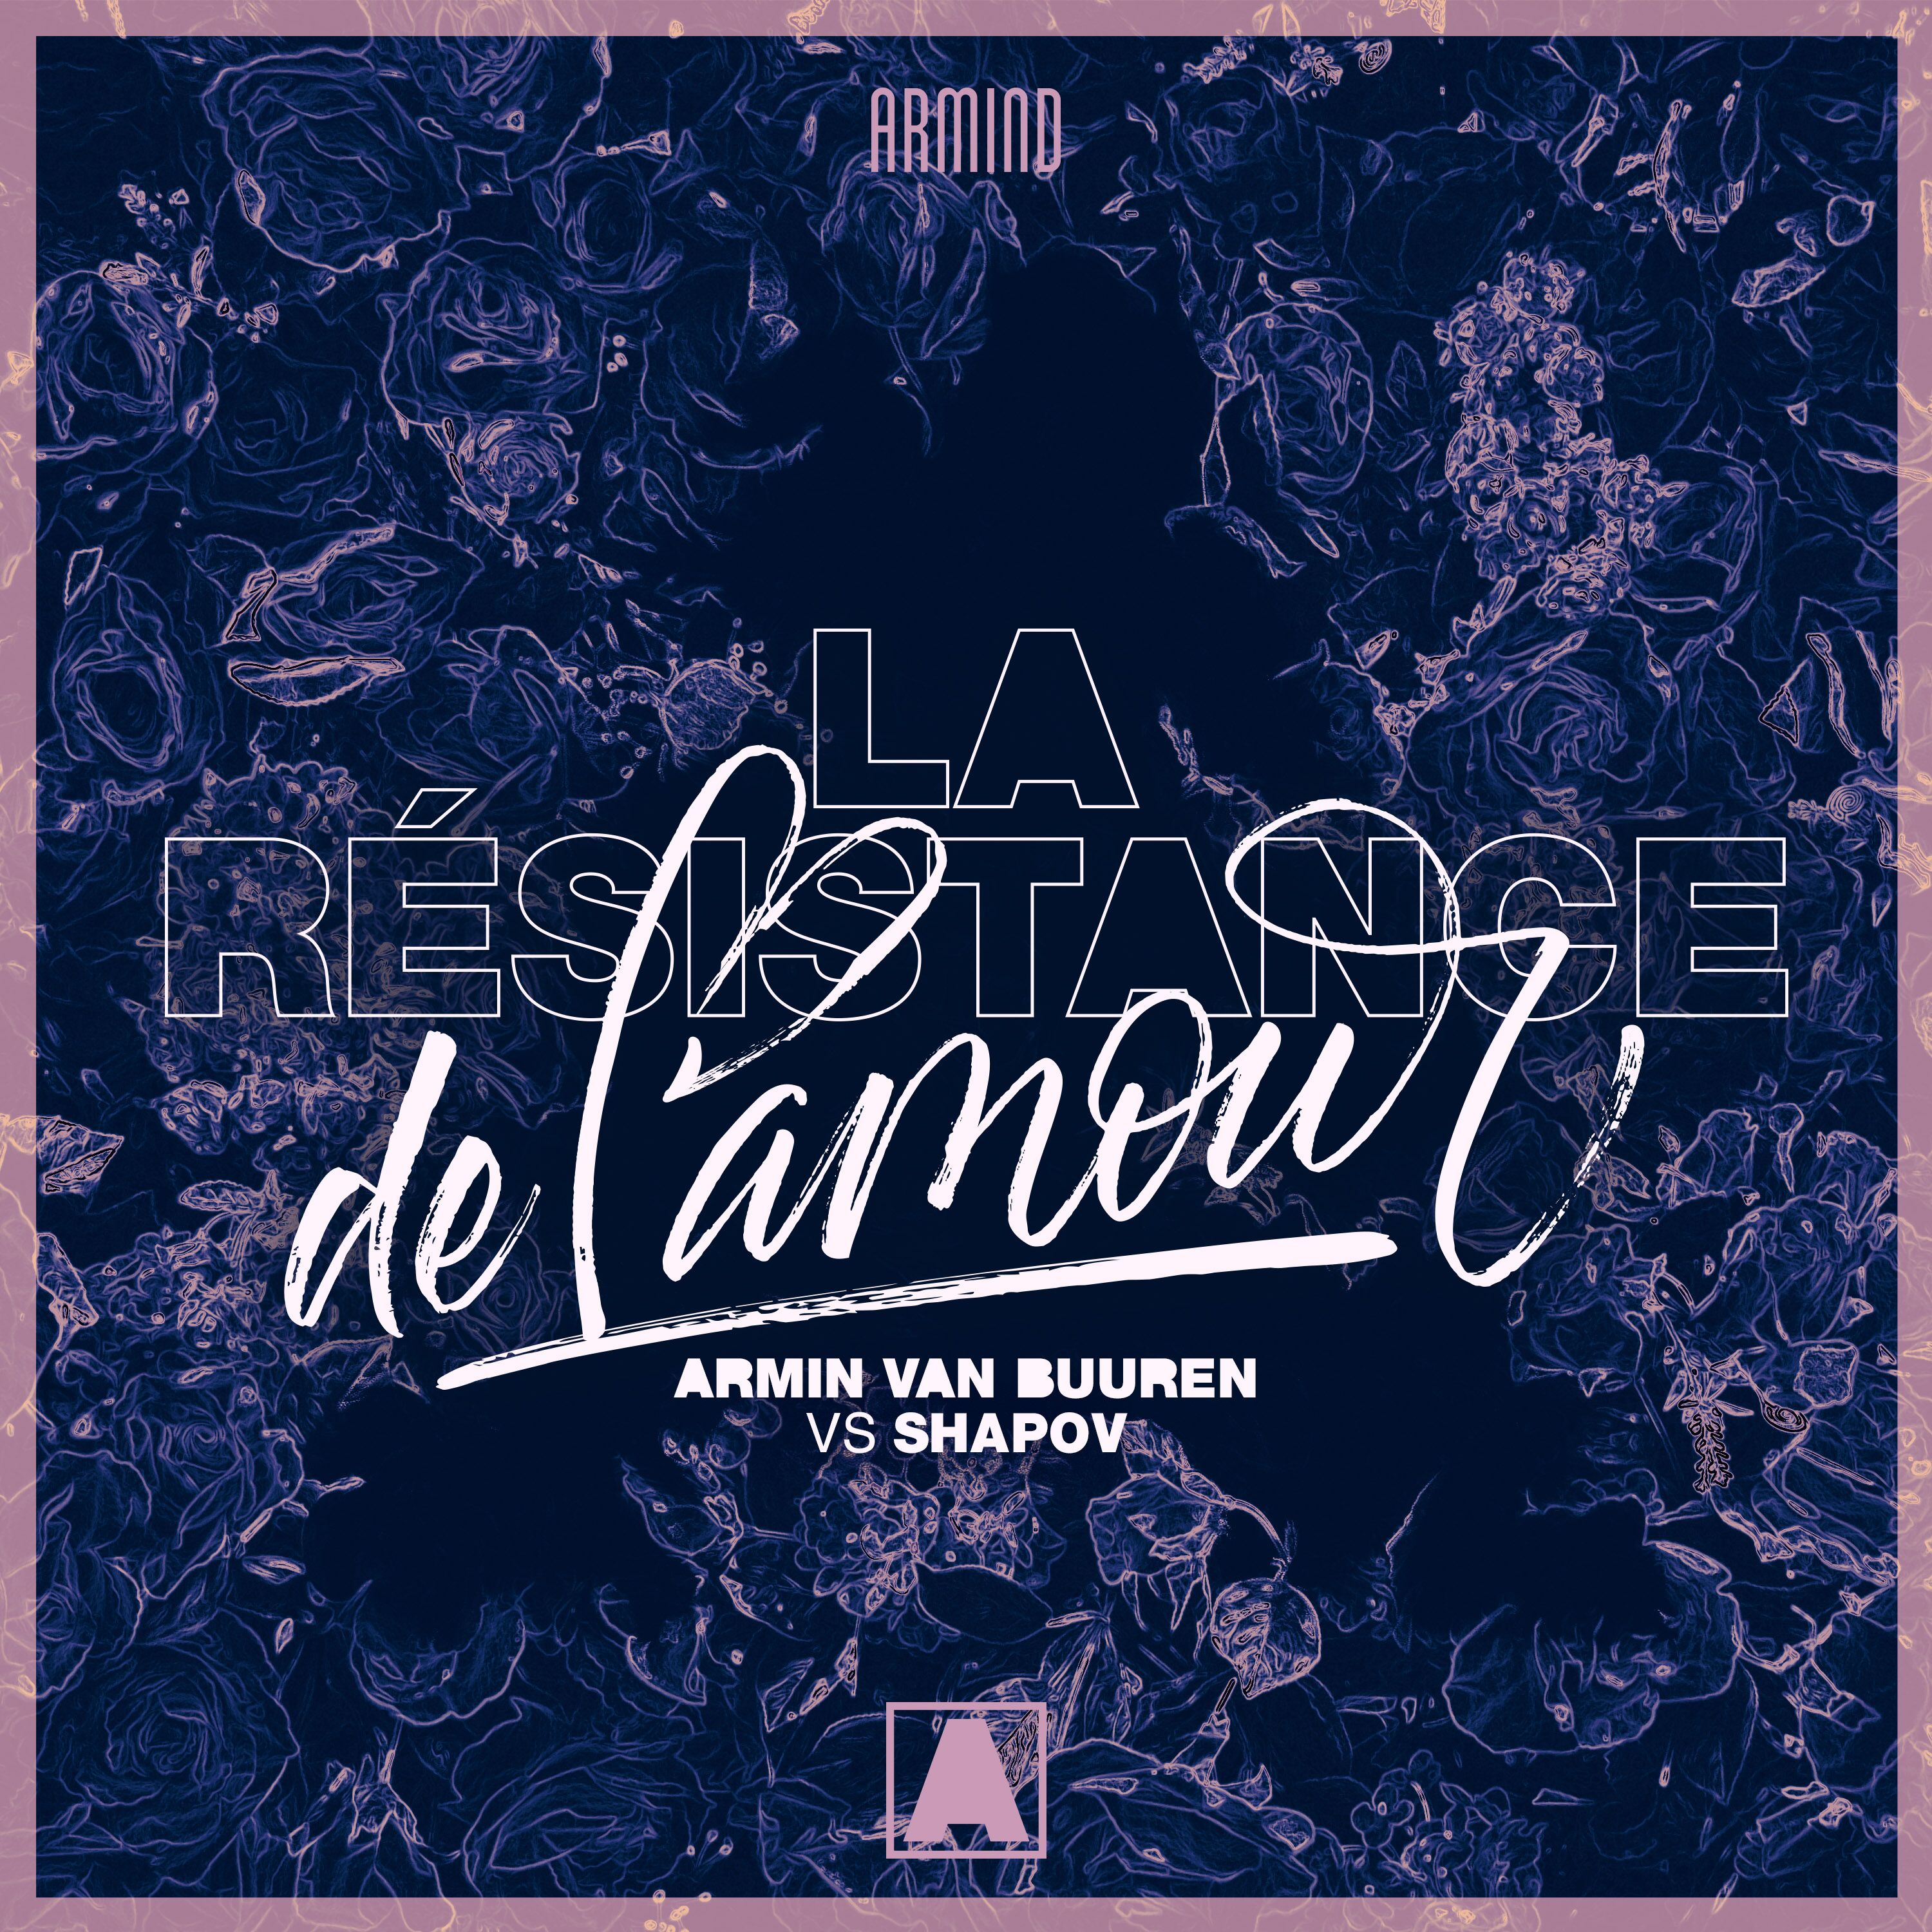 Armin van Buuren & Shapov presents La Résistance De L'Amour on Armind / Armada Music